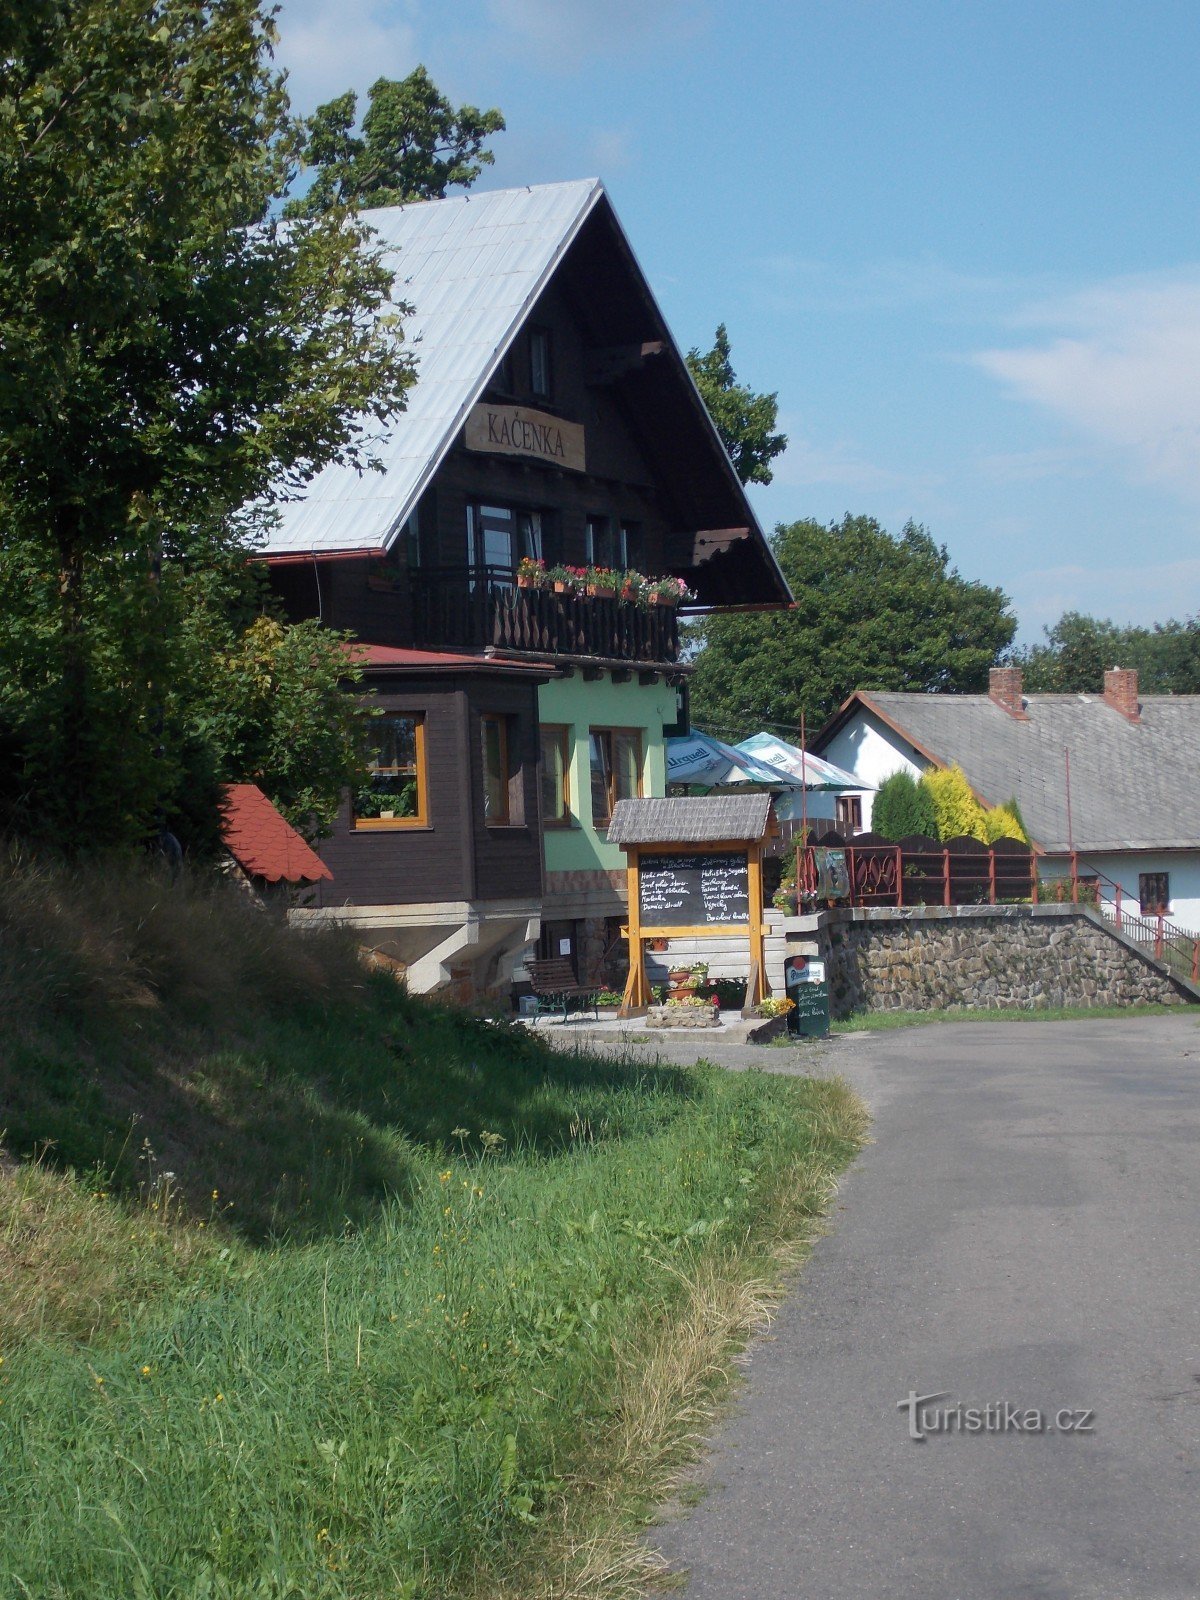 Hotel Kačenka above the town of Králíky